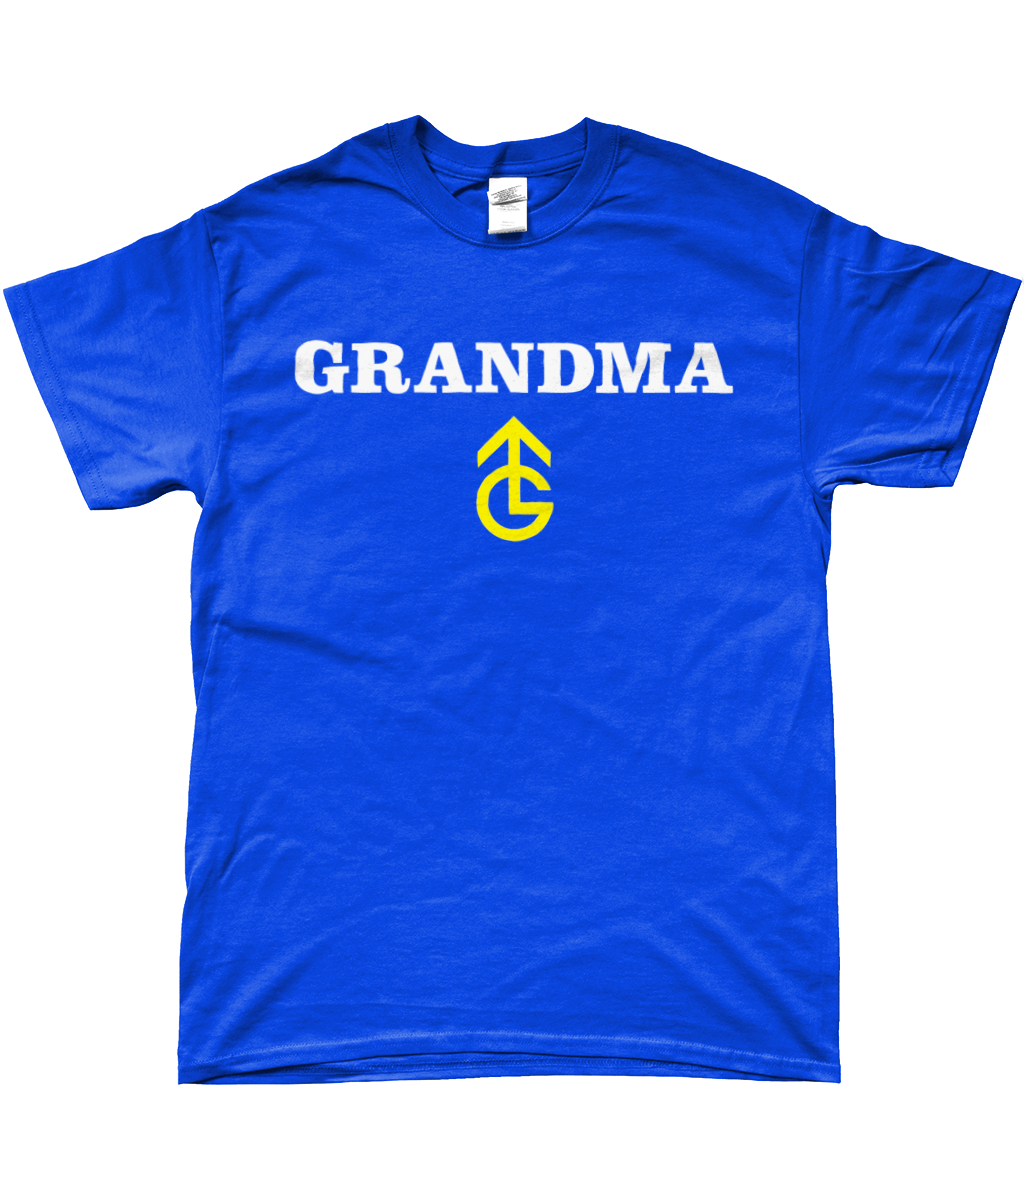 GRANDMA - No text